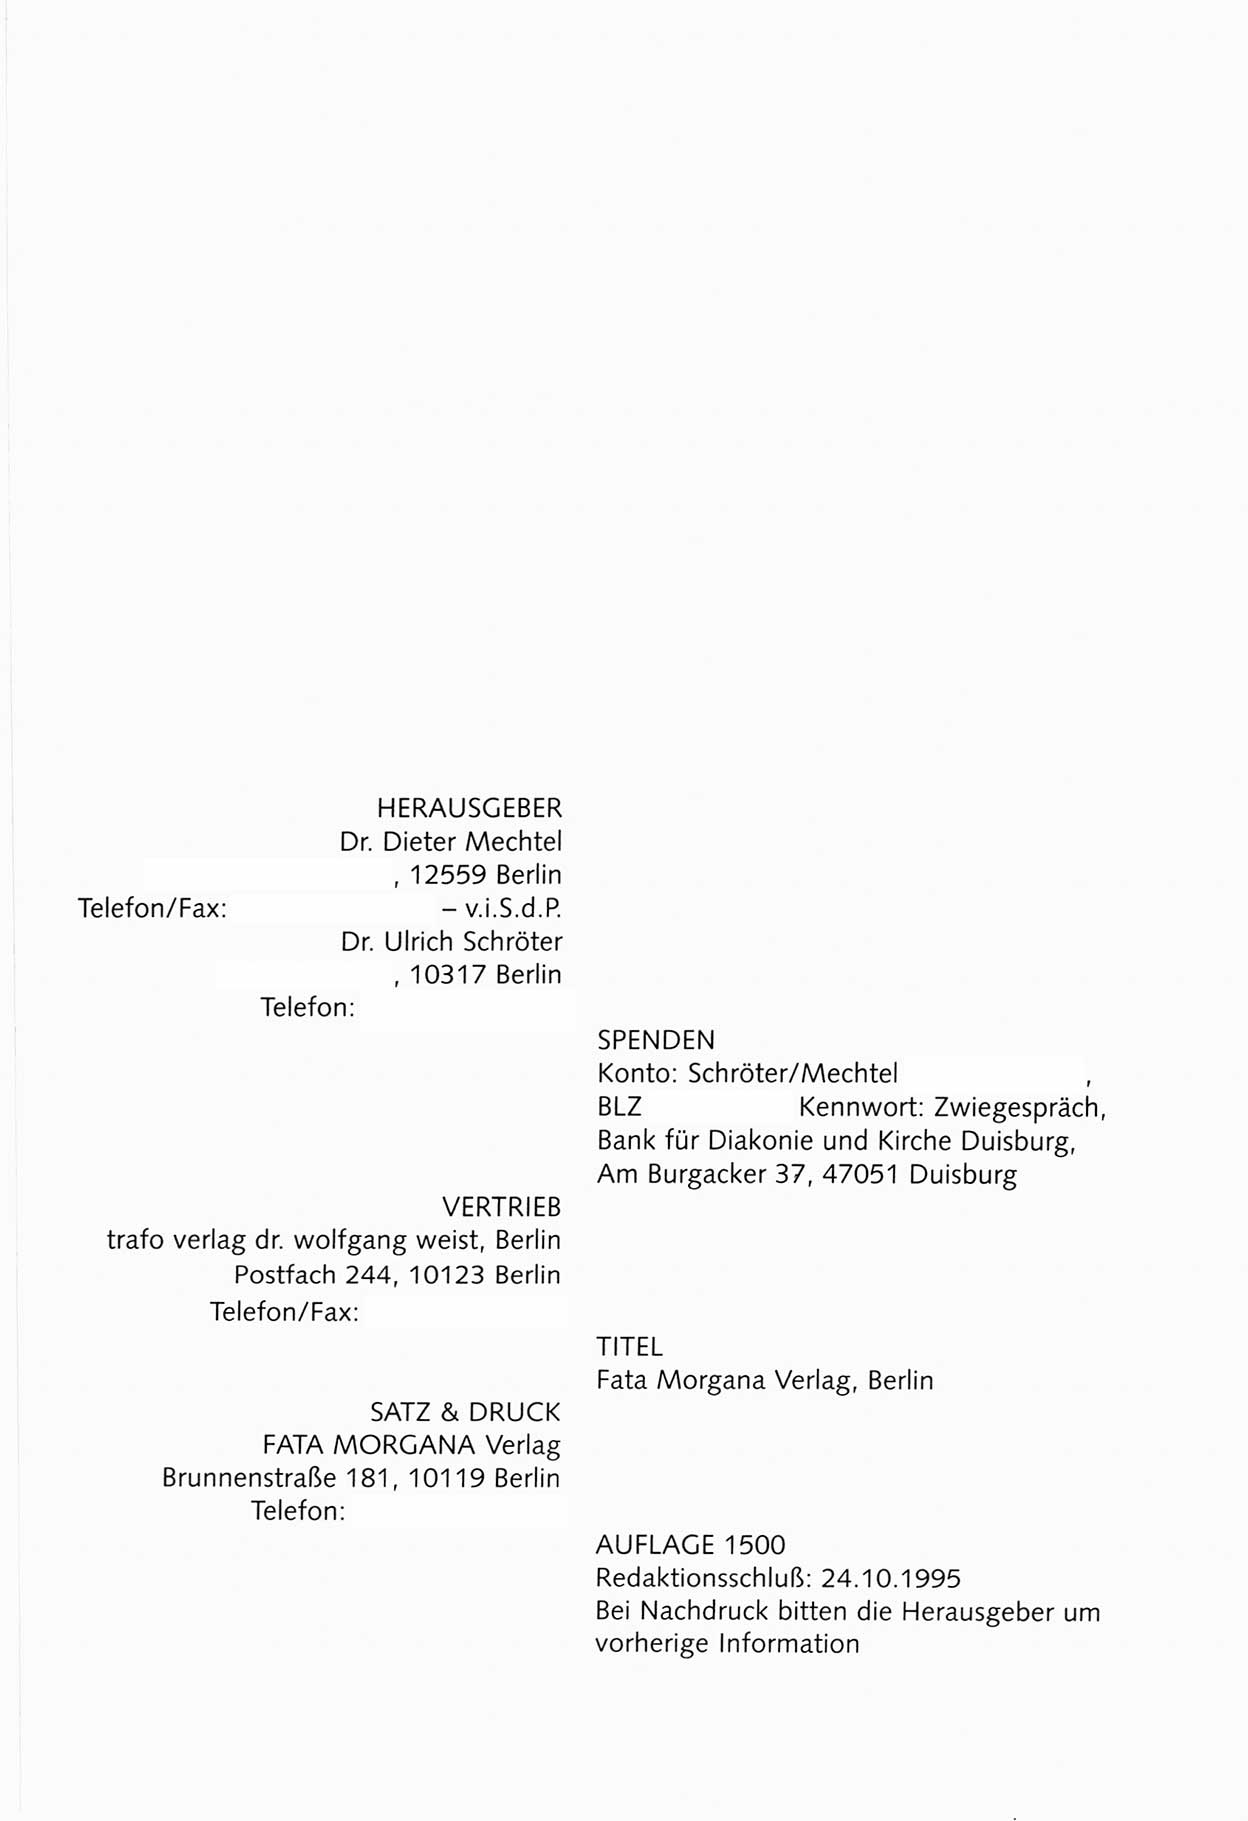 Zwie-Gespräch, Beiträge zum Umgang mit der Staatssicherheits-Vergangenheit [Deutsche Demokratische Republik (DDR)], Ausgabe Nr. 30, Berlin 1995, Seite 42 (Zwie-Gespr. Ausg. 30 1995, S. 42)